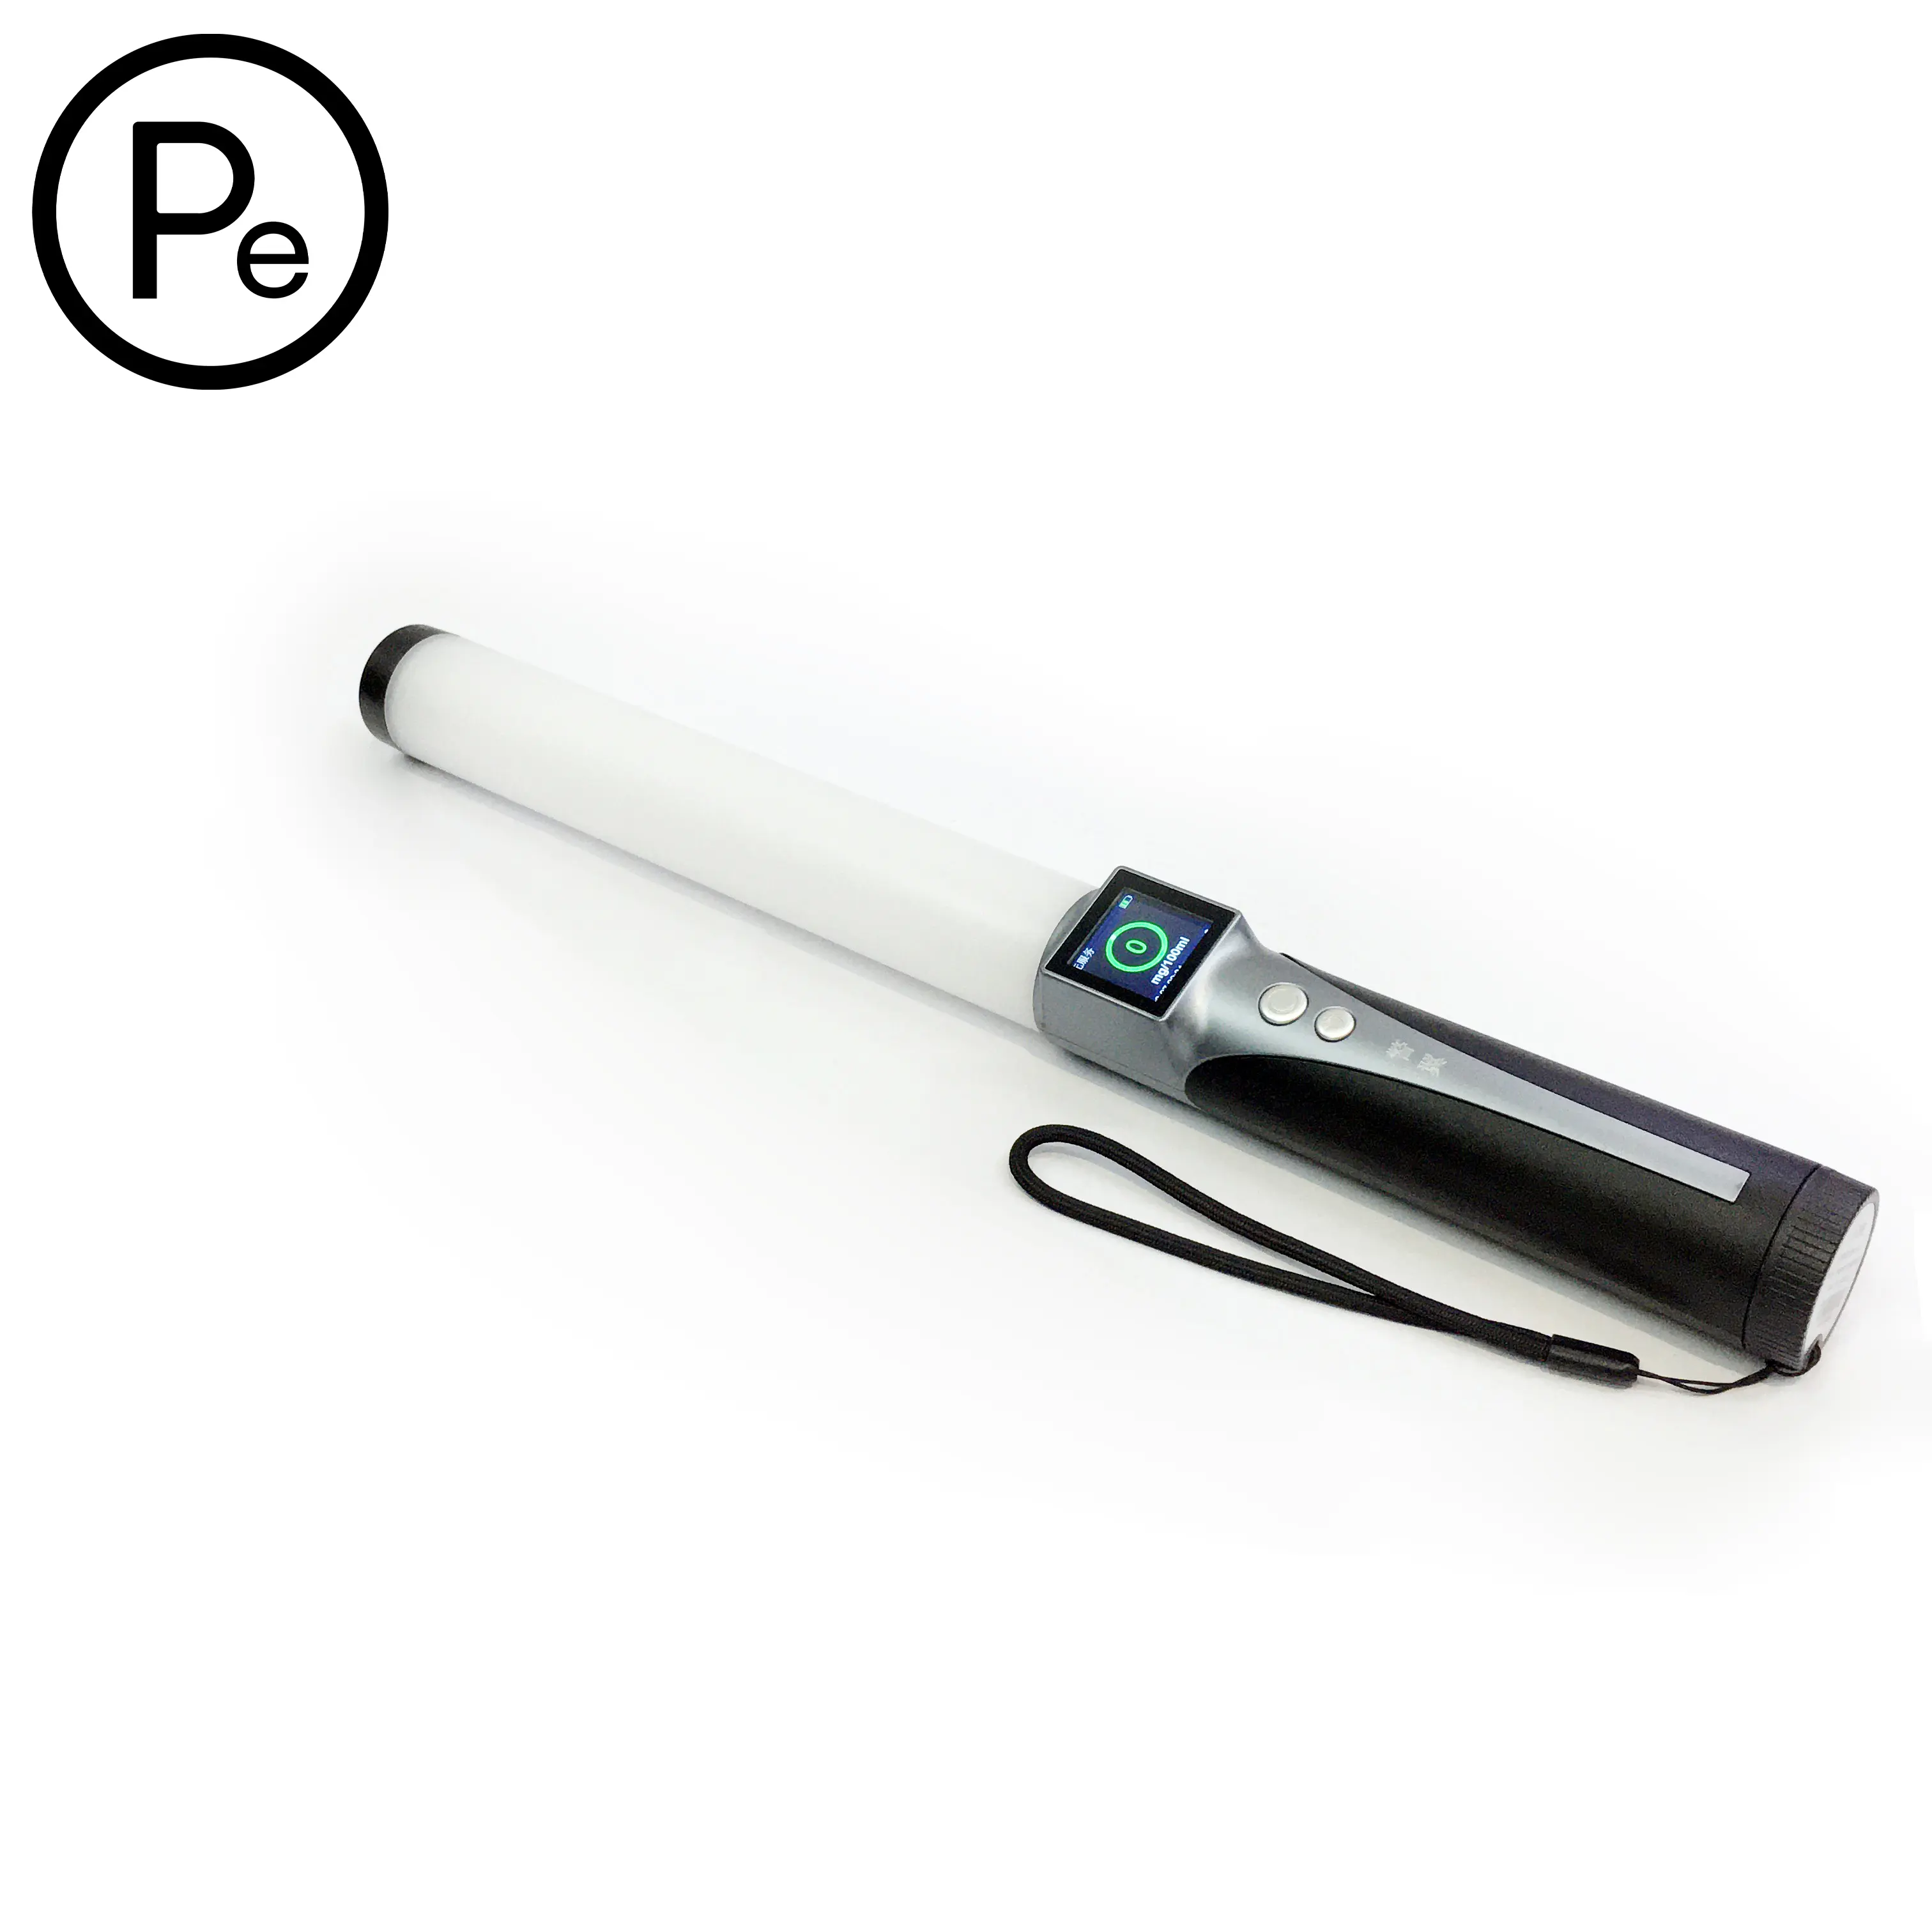 Portable Handheld Digital Alcohol Detector Meter Alcohol Checker Breath Tester Alcohol Tester Breathalyzer